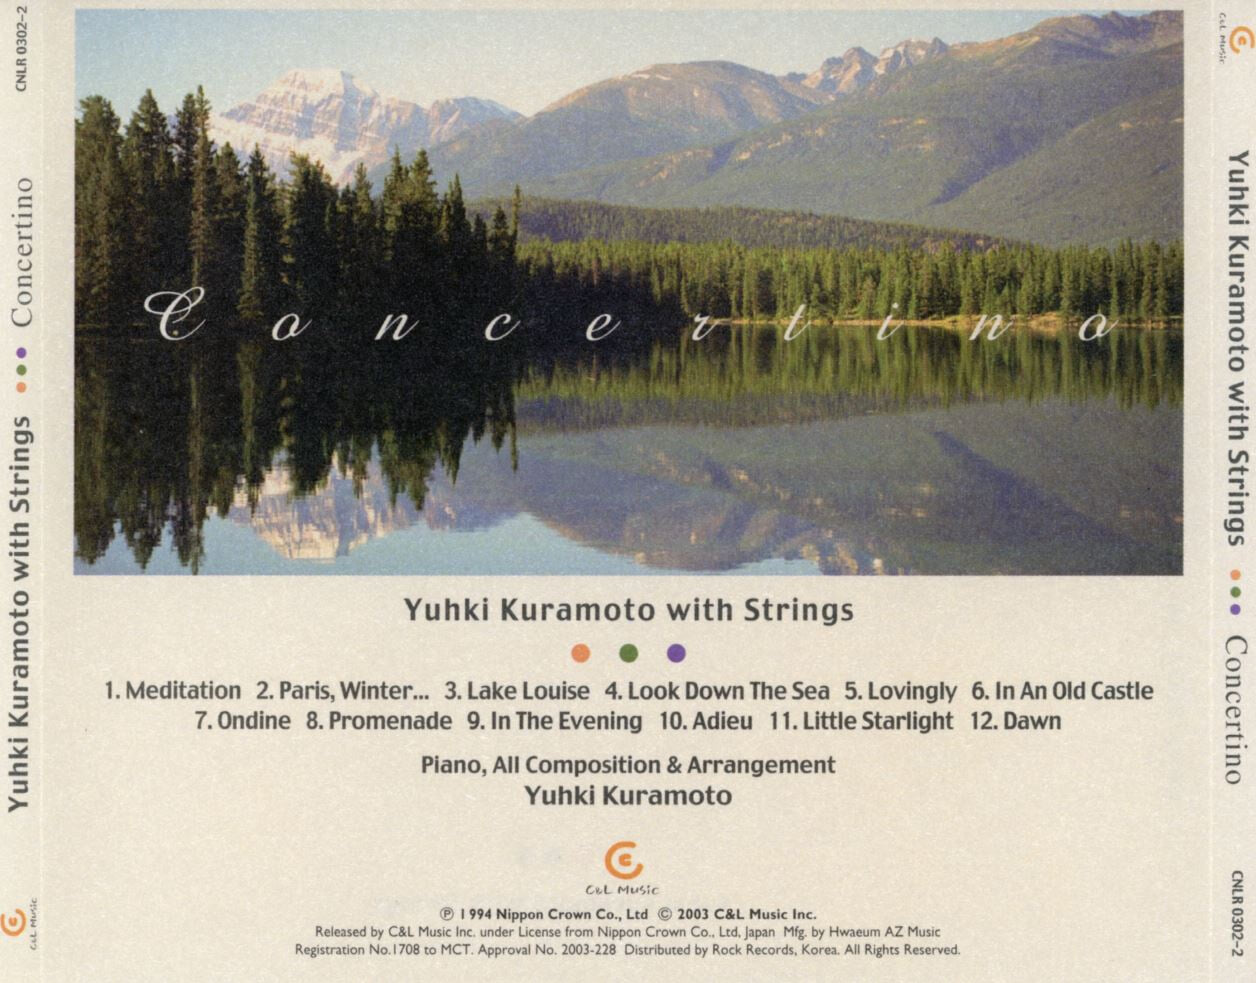 유키 구라모토 - Yuhki Kuramoto With Strings - Concertino